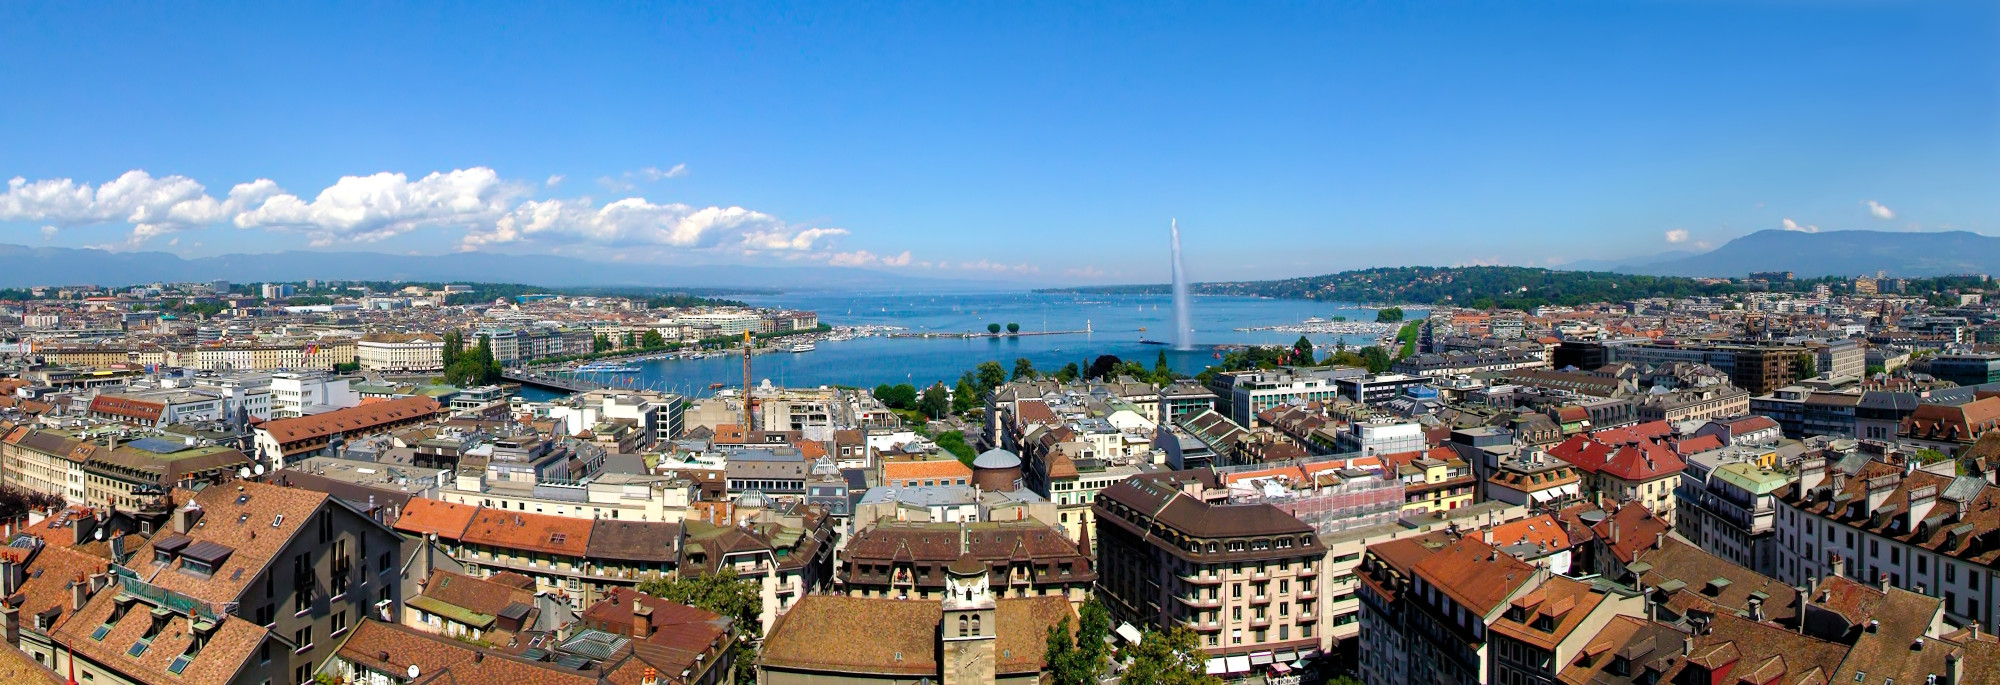 Панорамный вид на Женеву и Женевское озеро с северной башни собора Святого Петра.